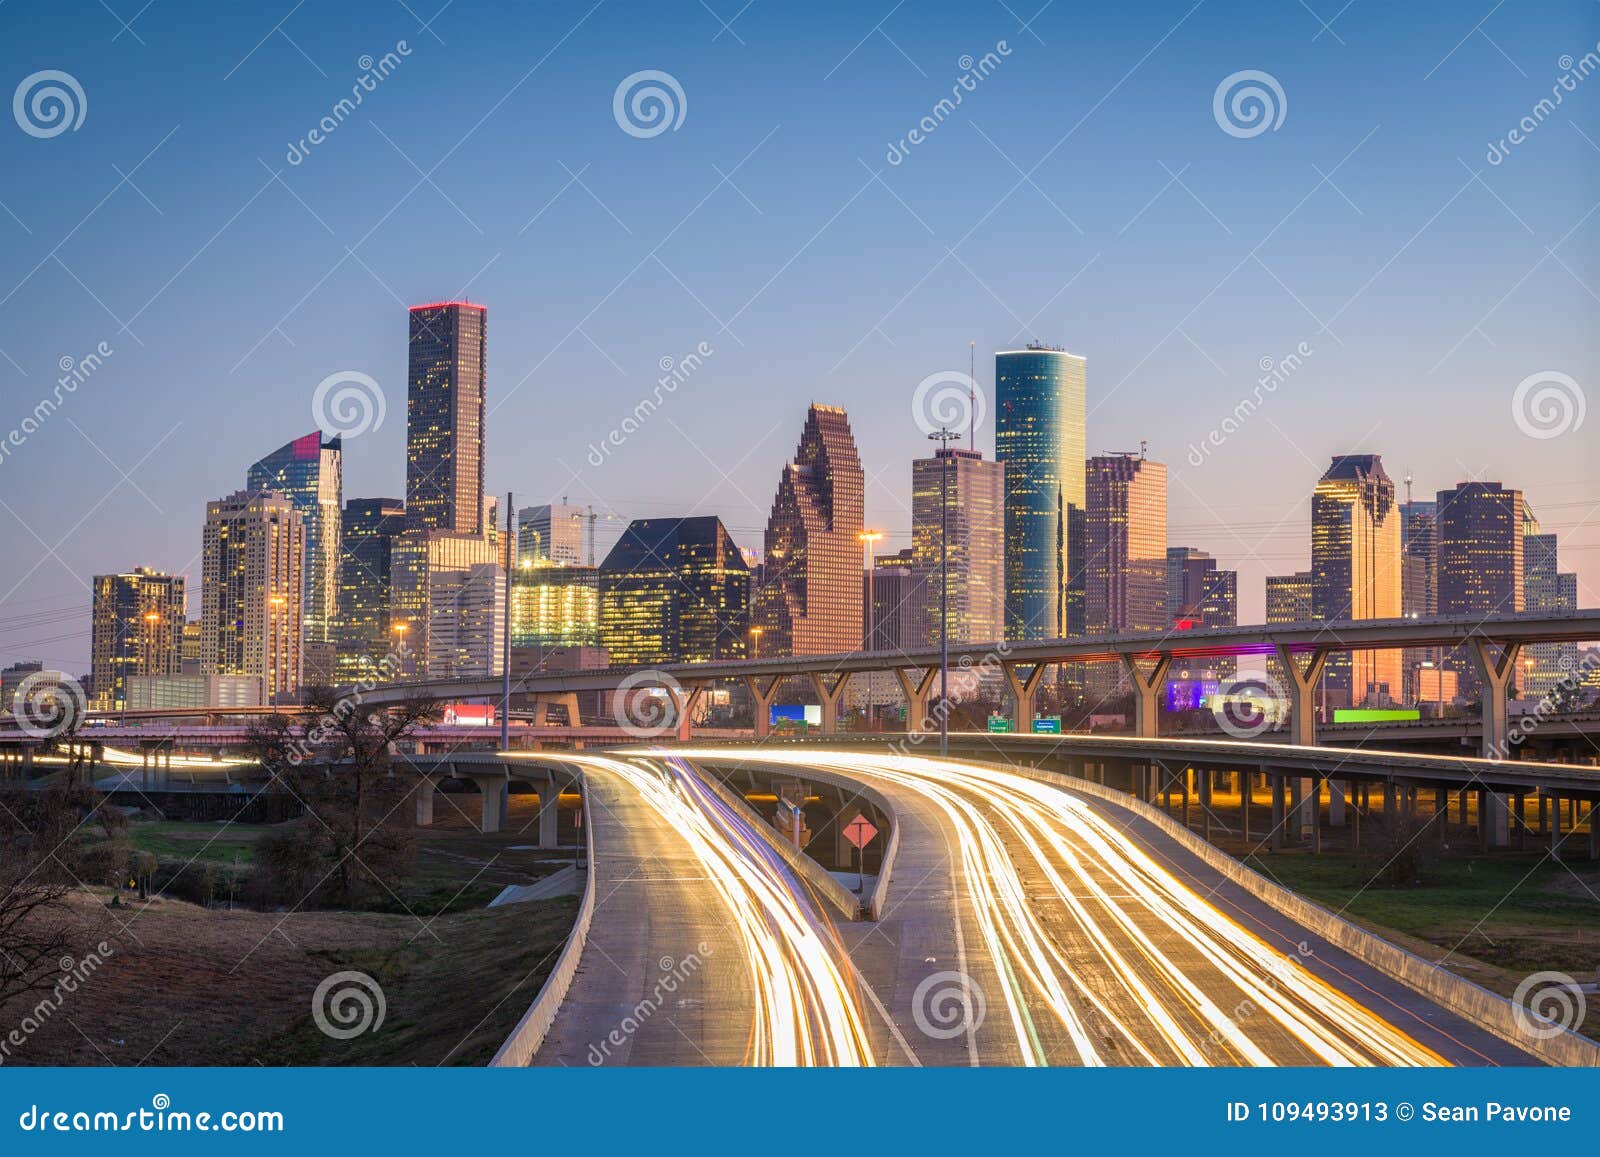 houston, texas, usa skyline and highway